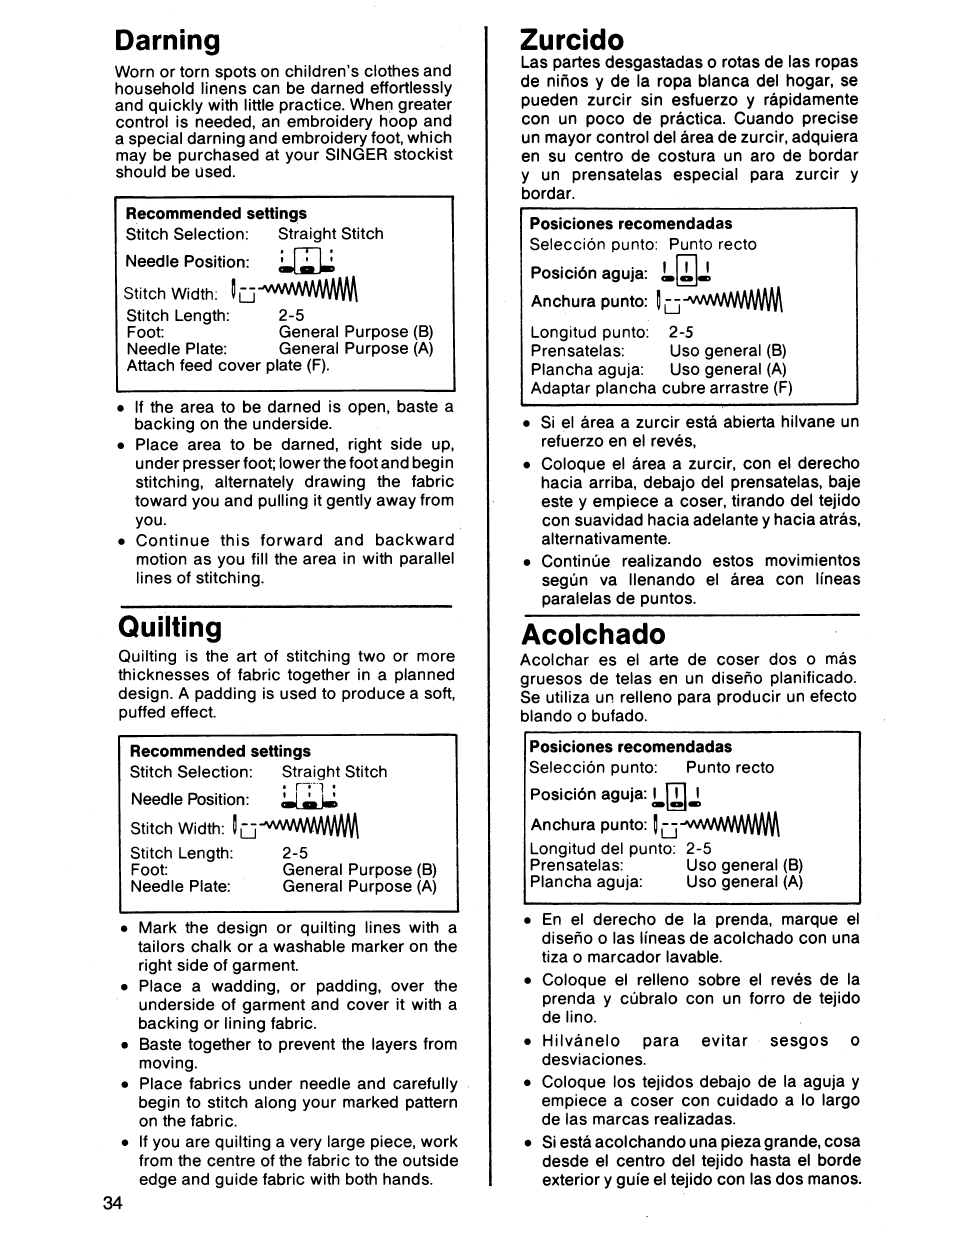 Darning, Quilting, Zurcido | Acolchado, Zurcido acolchado | SINGER 7011 User Manual | Page 36 / 78